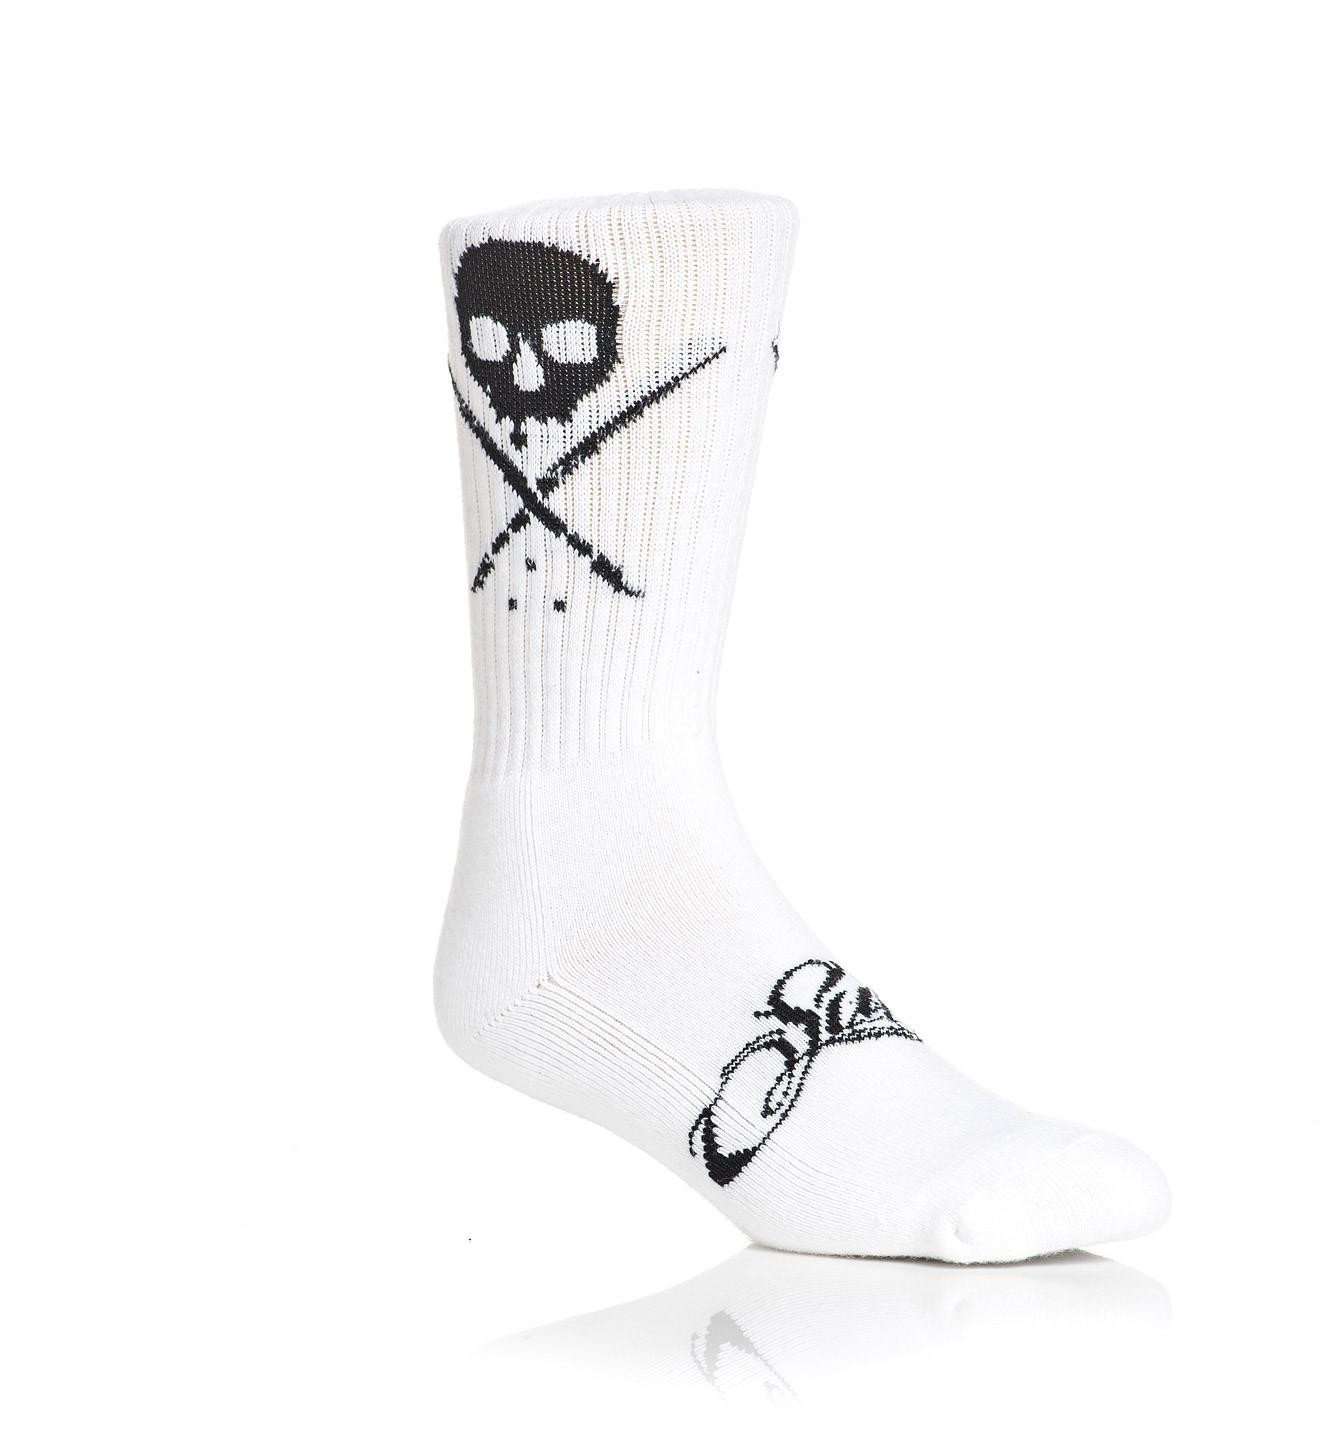 Standard Issue Socks White/Black - Sullen Art Co.